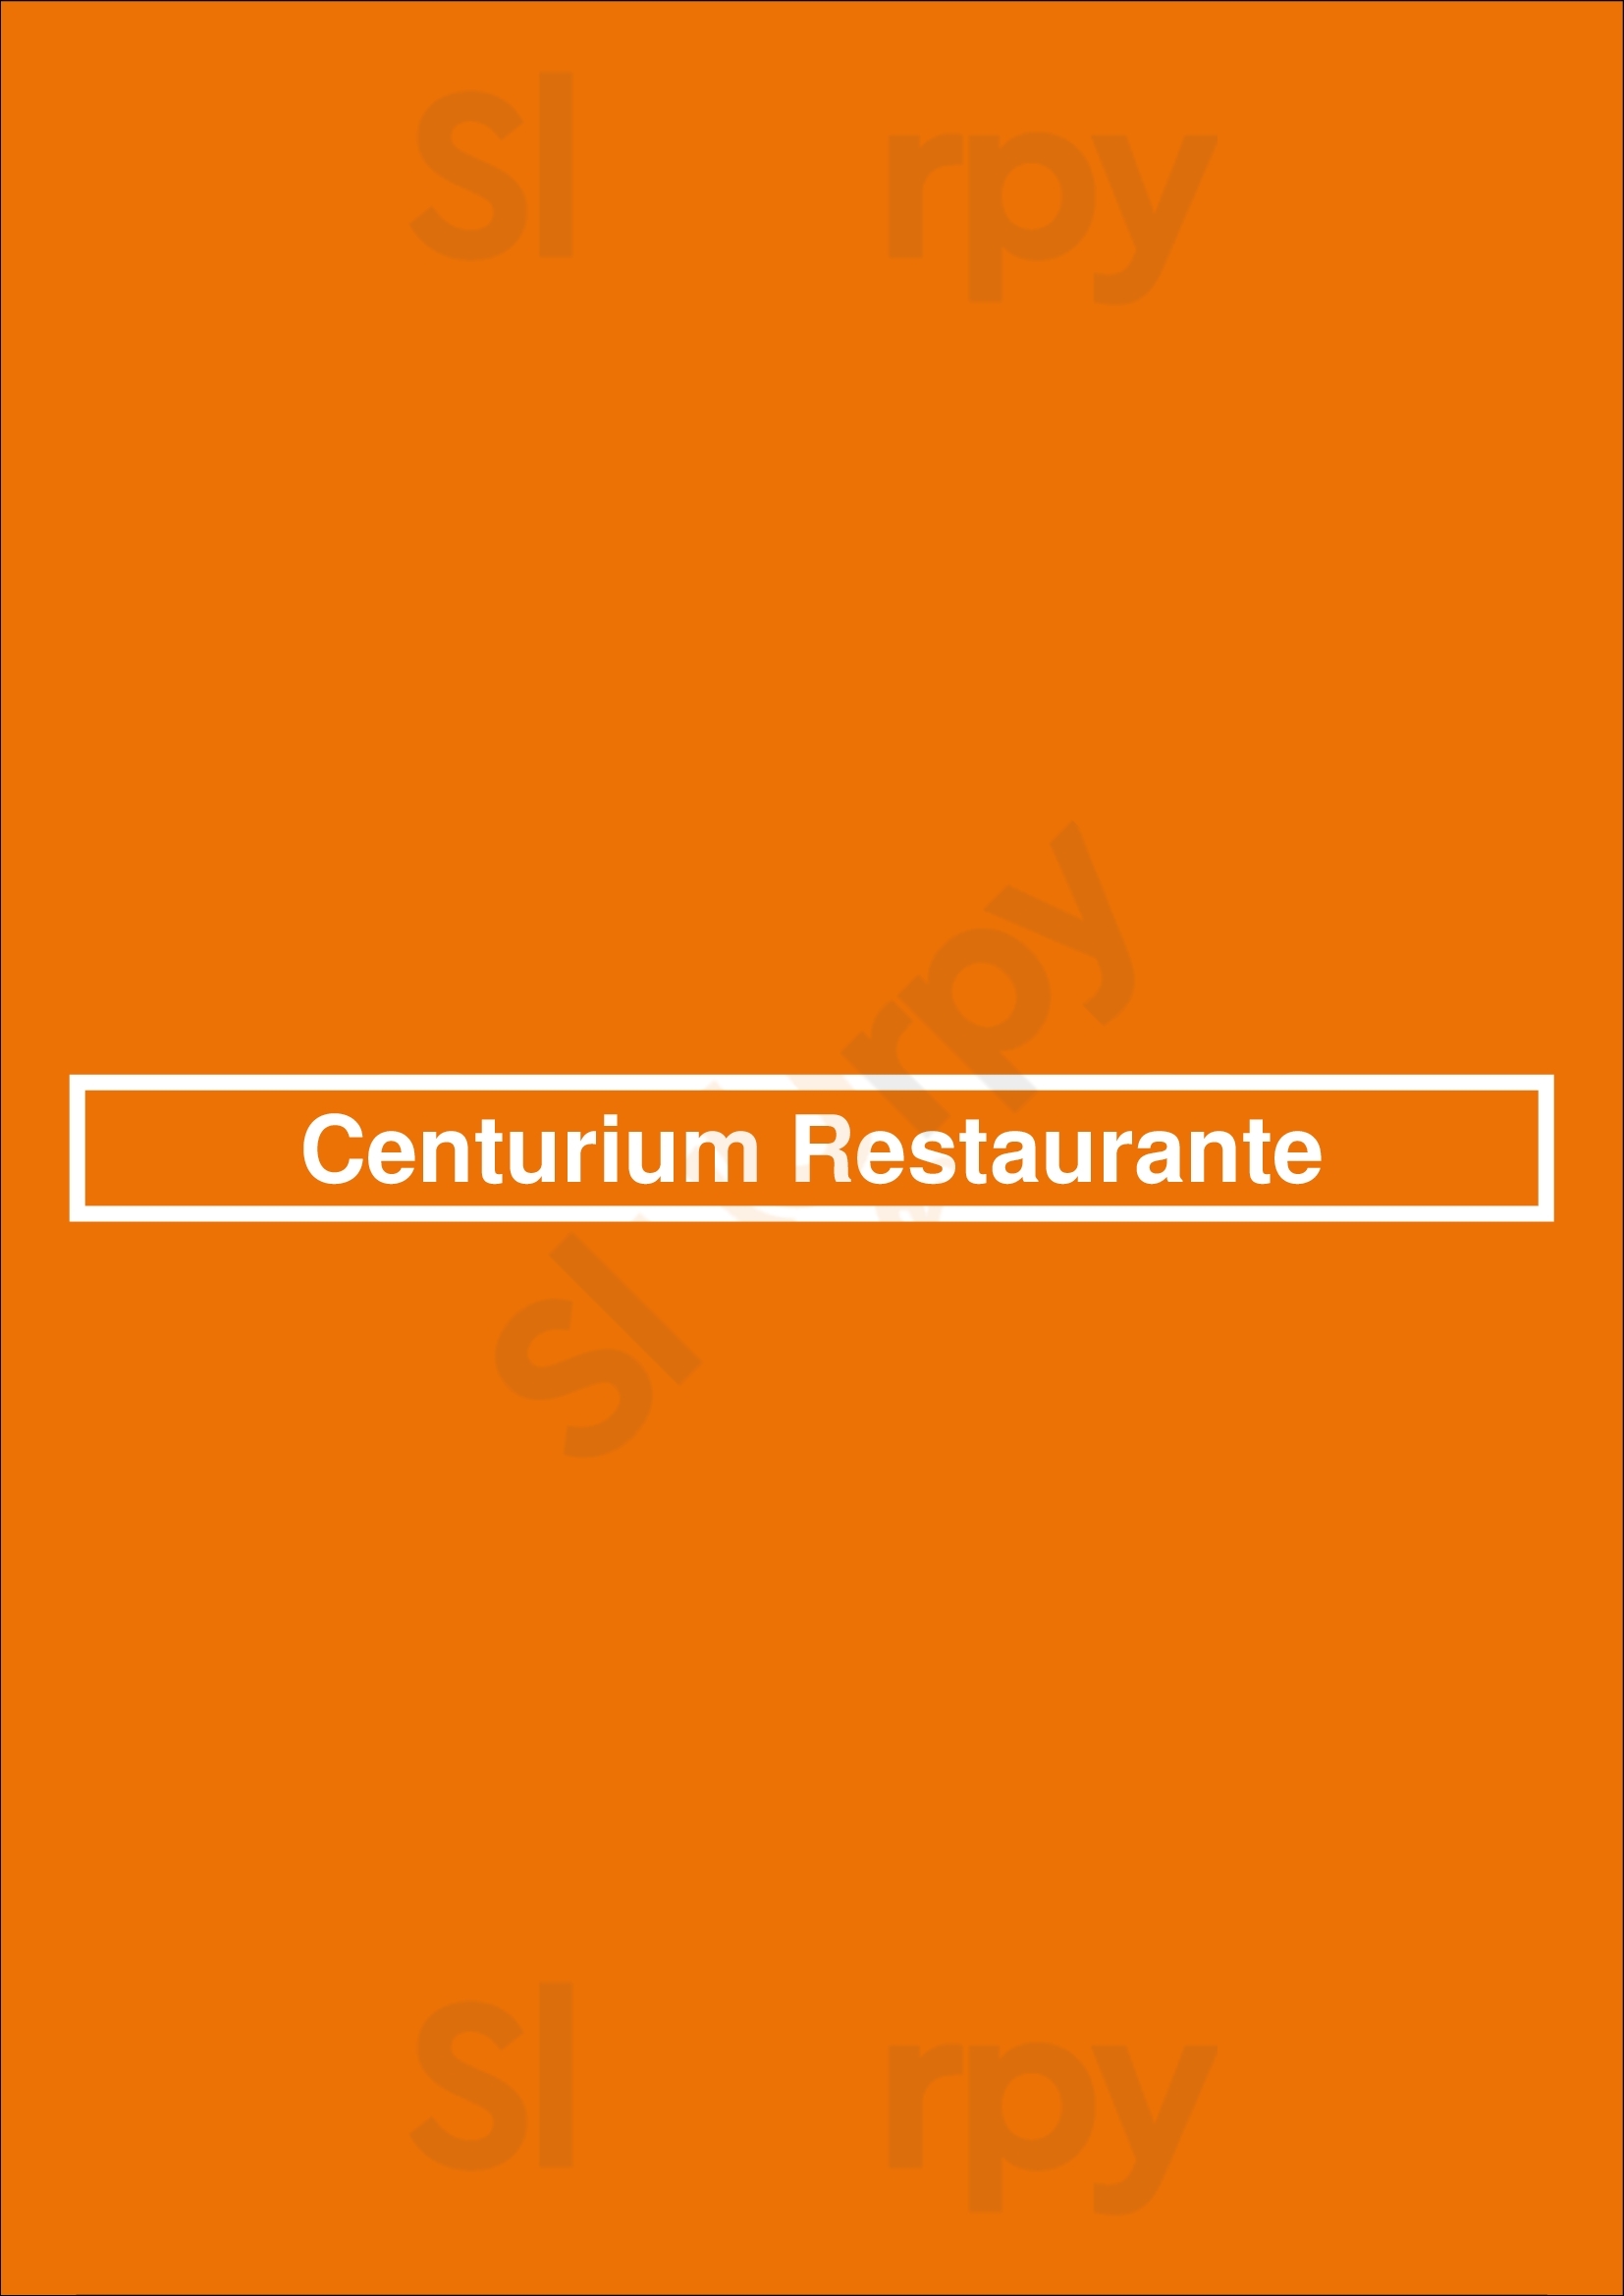 Centurium Restaurante Braga Menu - 1